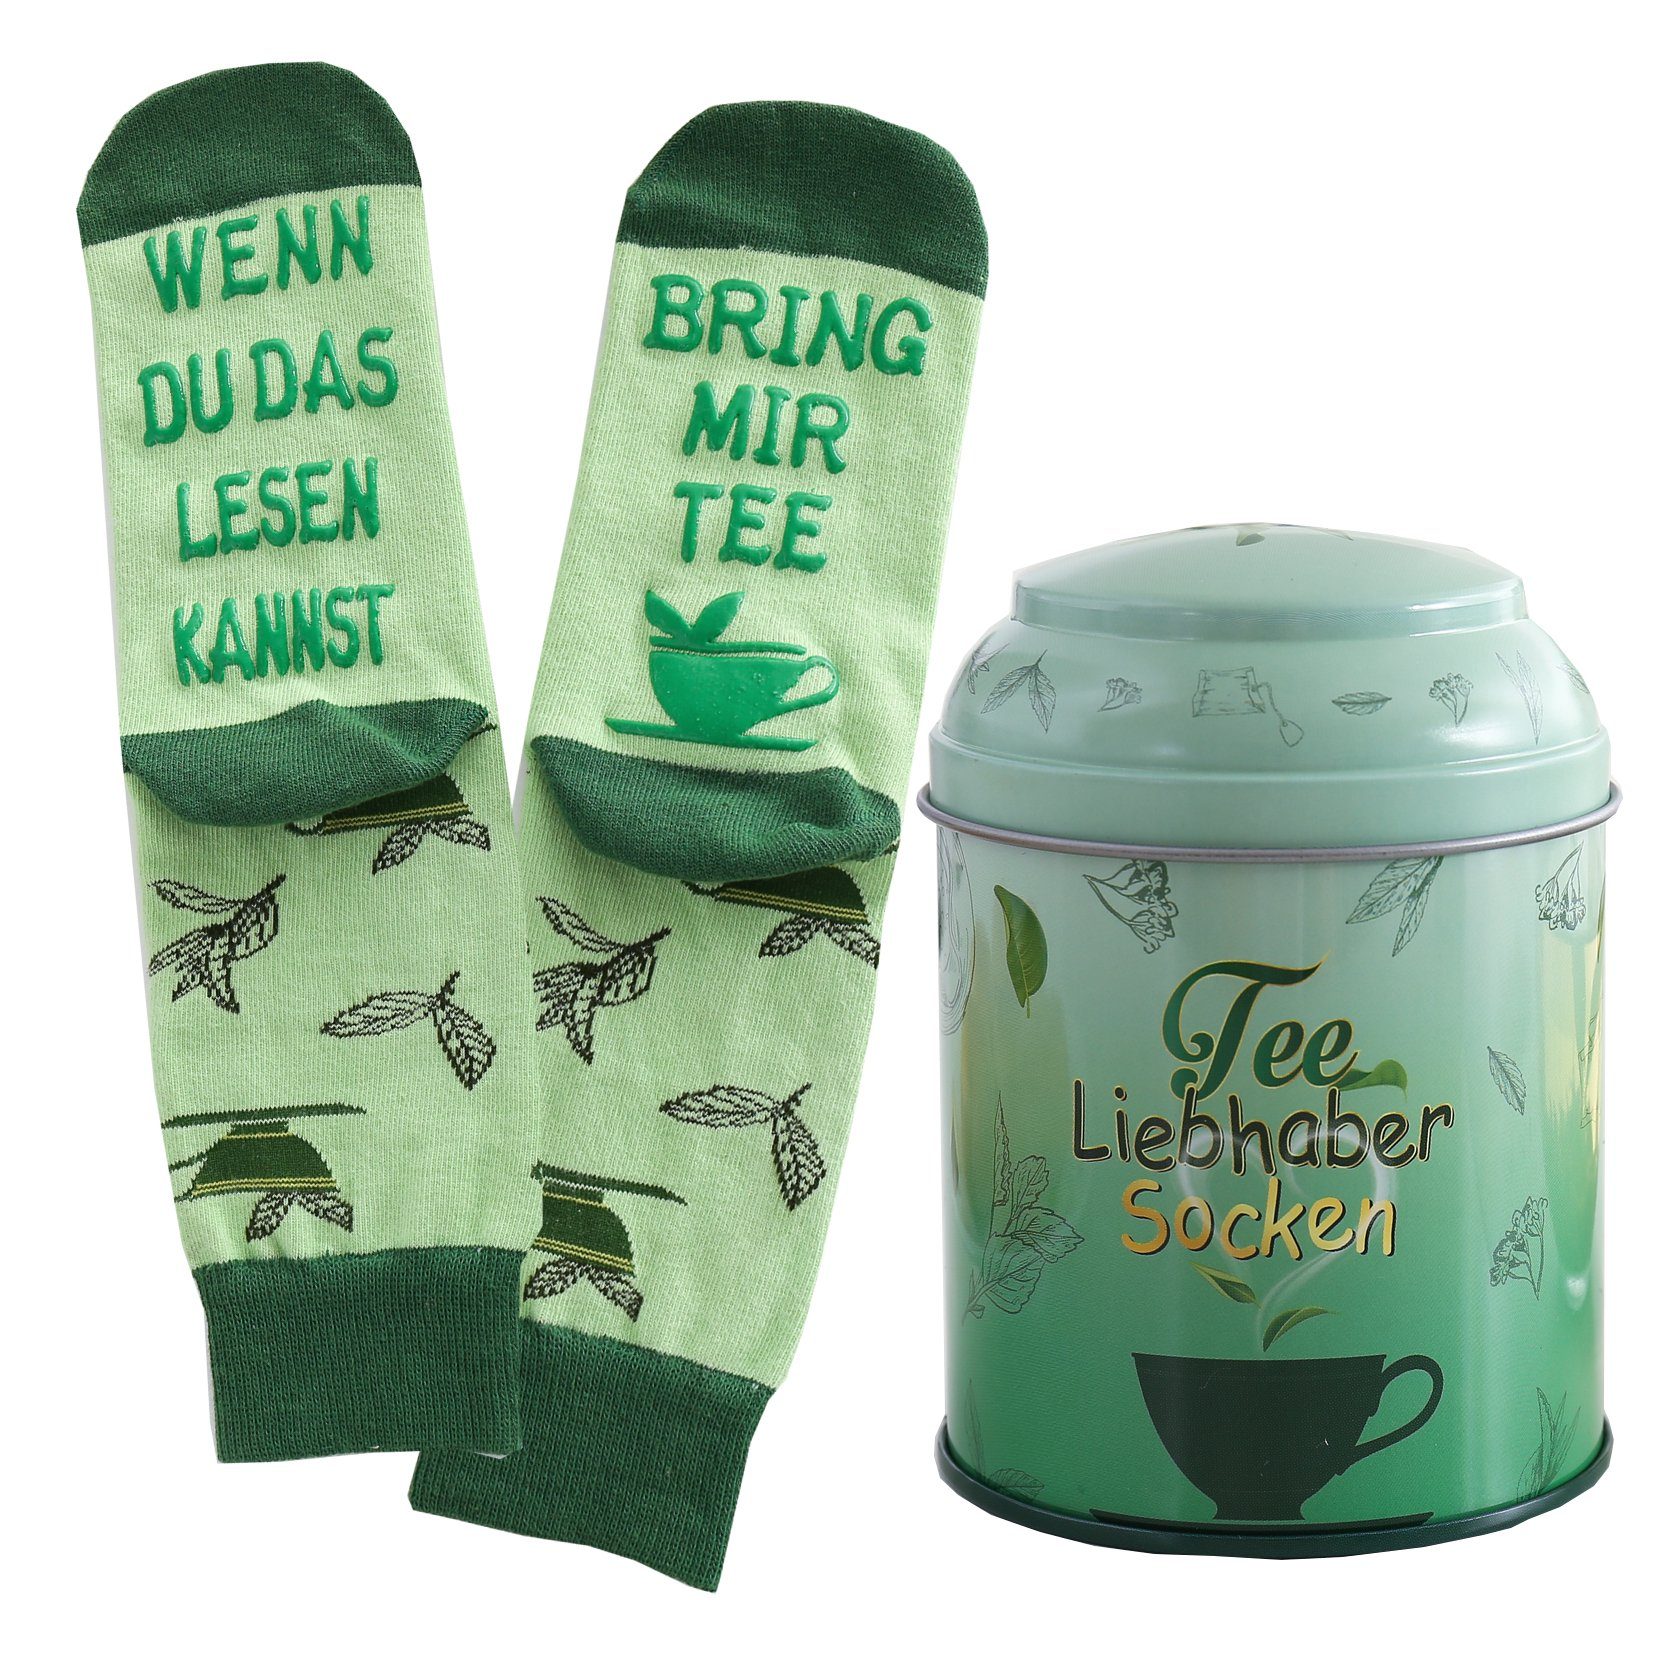 Lucadeau Freizeitsocken Kaffee Schoki Tee Socken in Dose mit Spruch, wenn du das lesen kannst (Dose, 1 Paar) rutschfest, Gr. 37-43, Geschenke für Frauen, Muttertag Geschenk grün